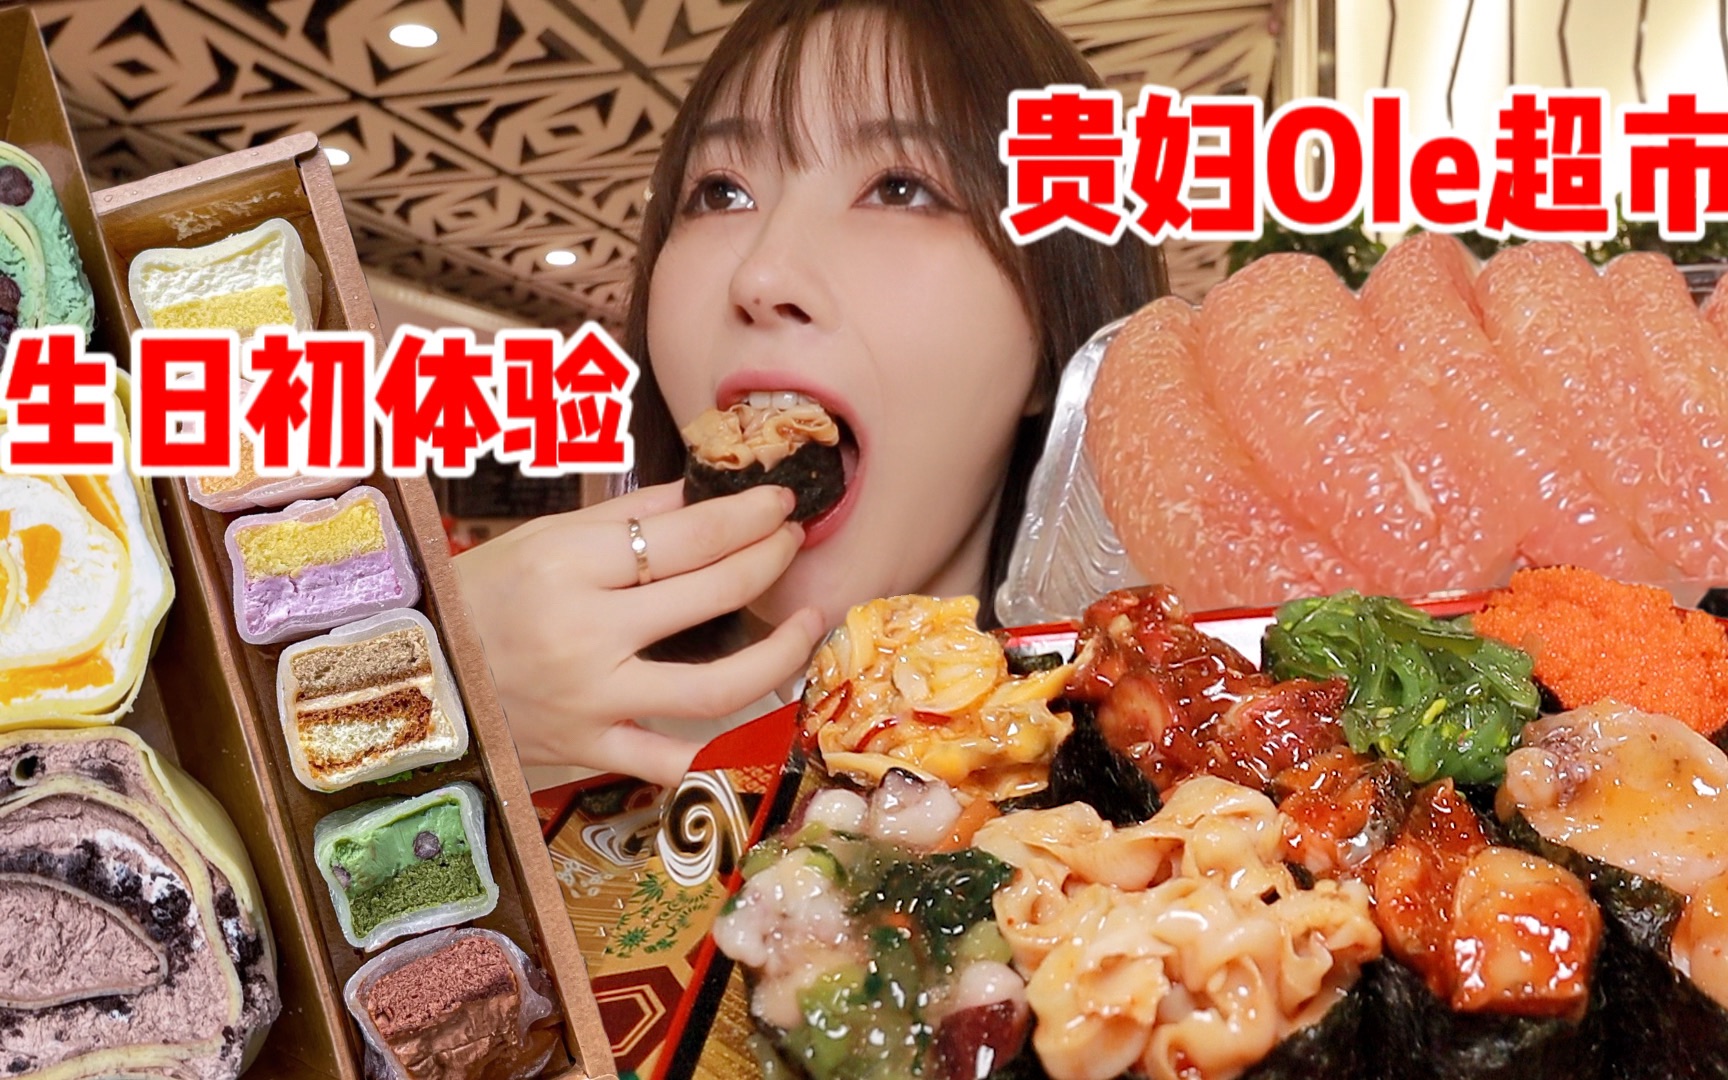 浅逛Ole超市就花了300多，生日体验名媛生活。